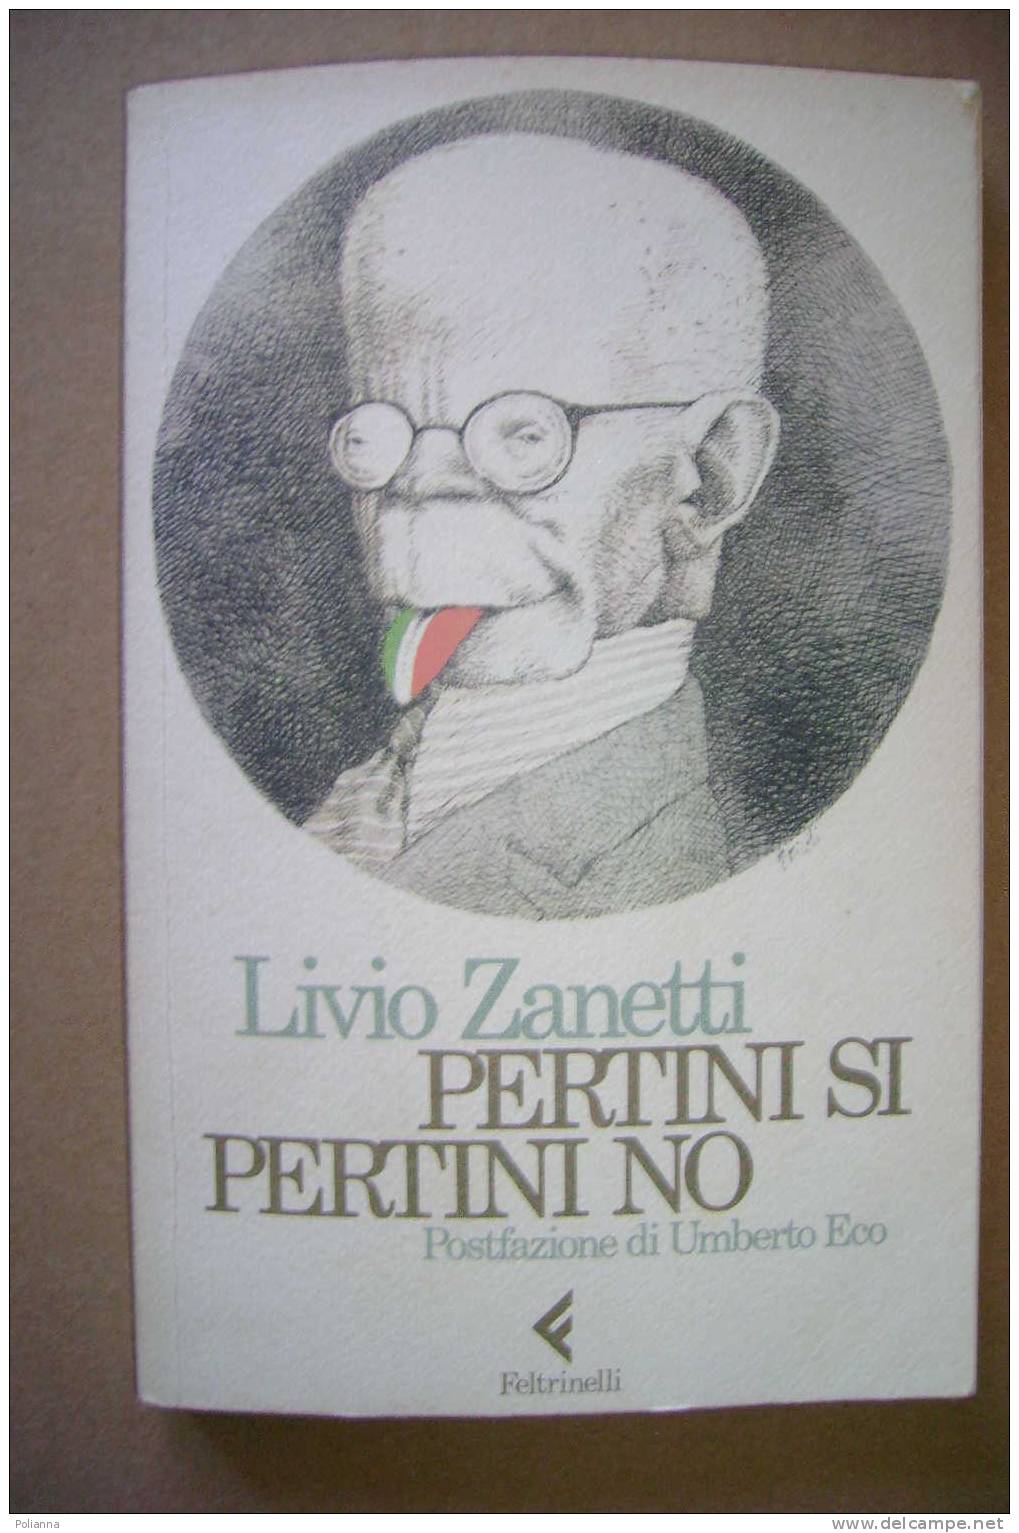 PAM/20 L.Zanetti PERTINI SI PERTINI NO Feltrinelli I Ed.1985. Postfazione Di Umberto Eco - Société, Politique, économie